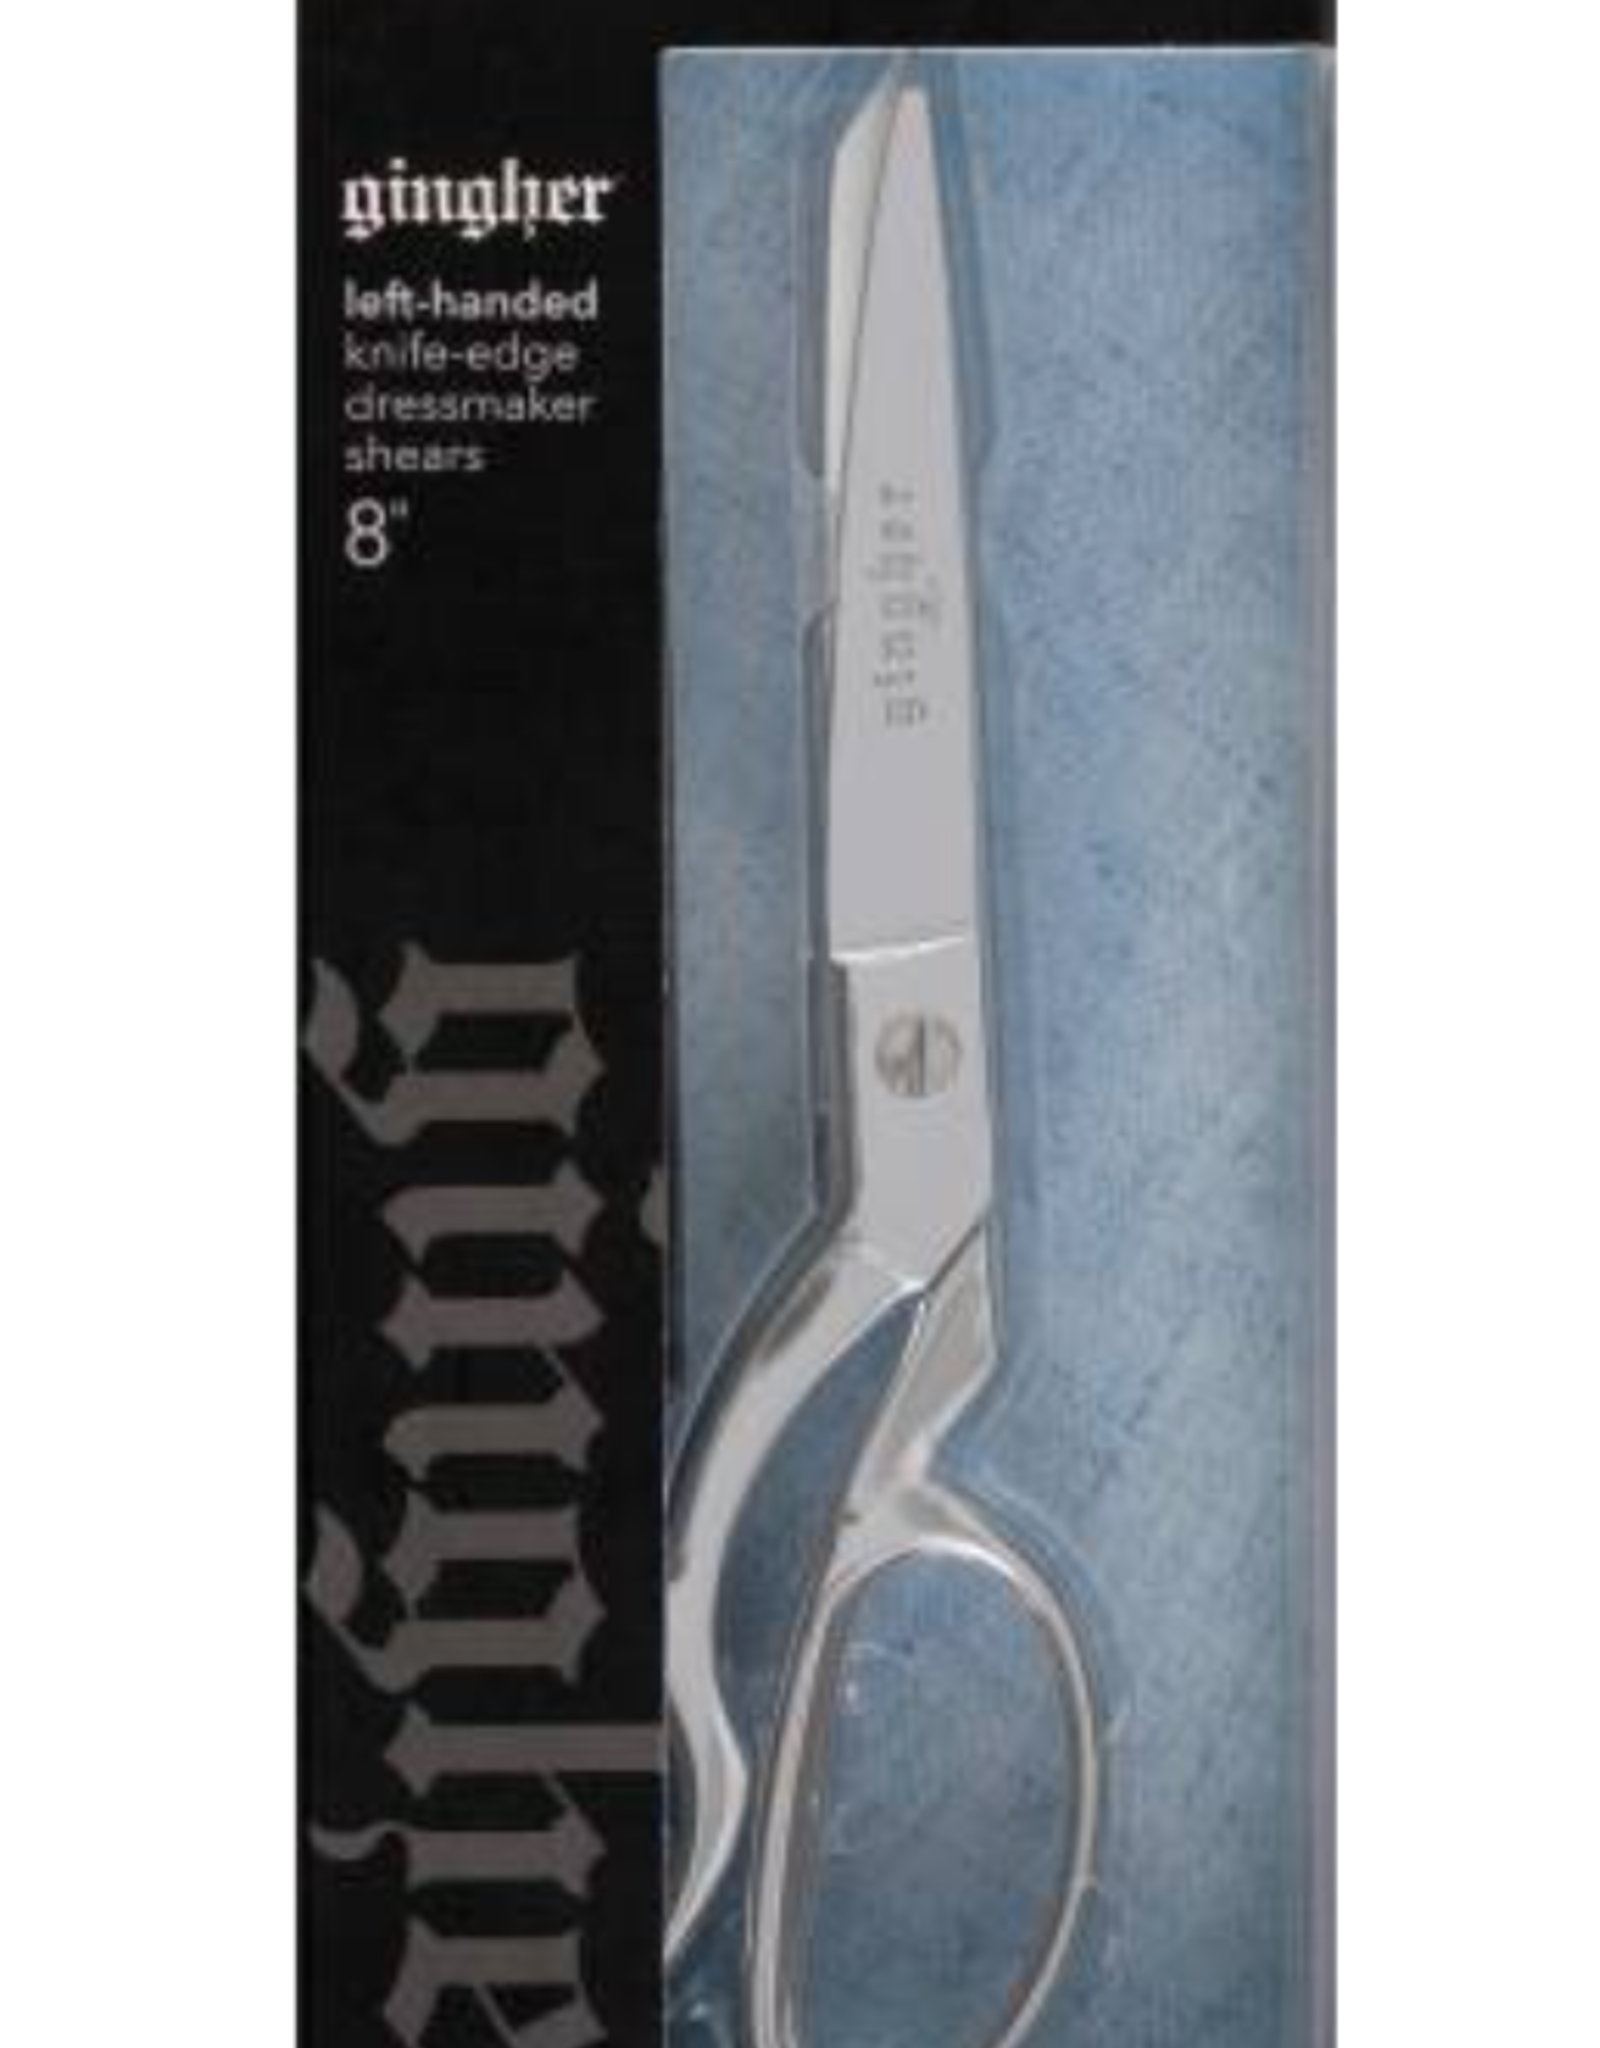 Gingher 8" Knife Edge Left Handed Scissor